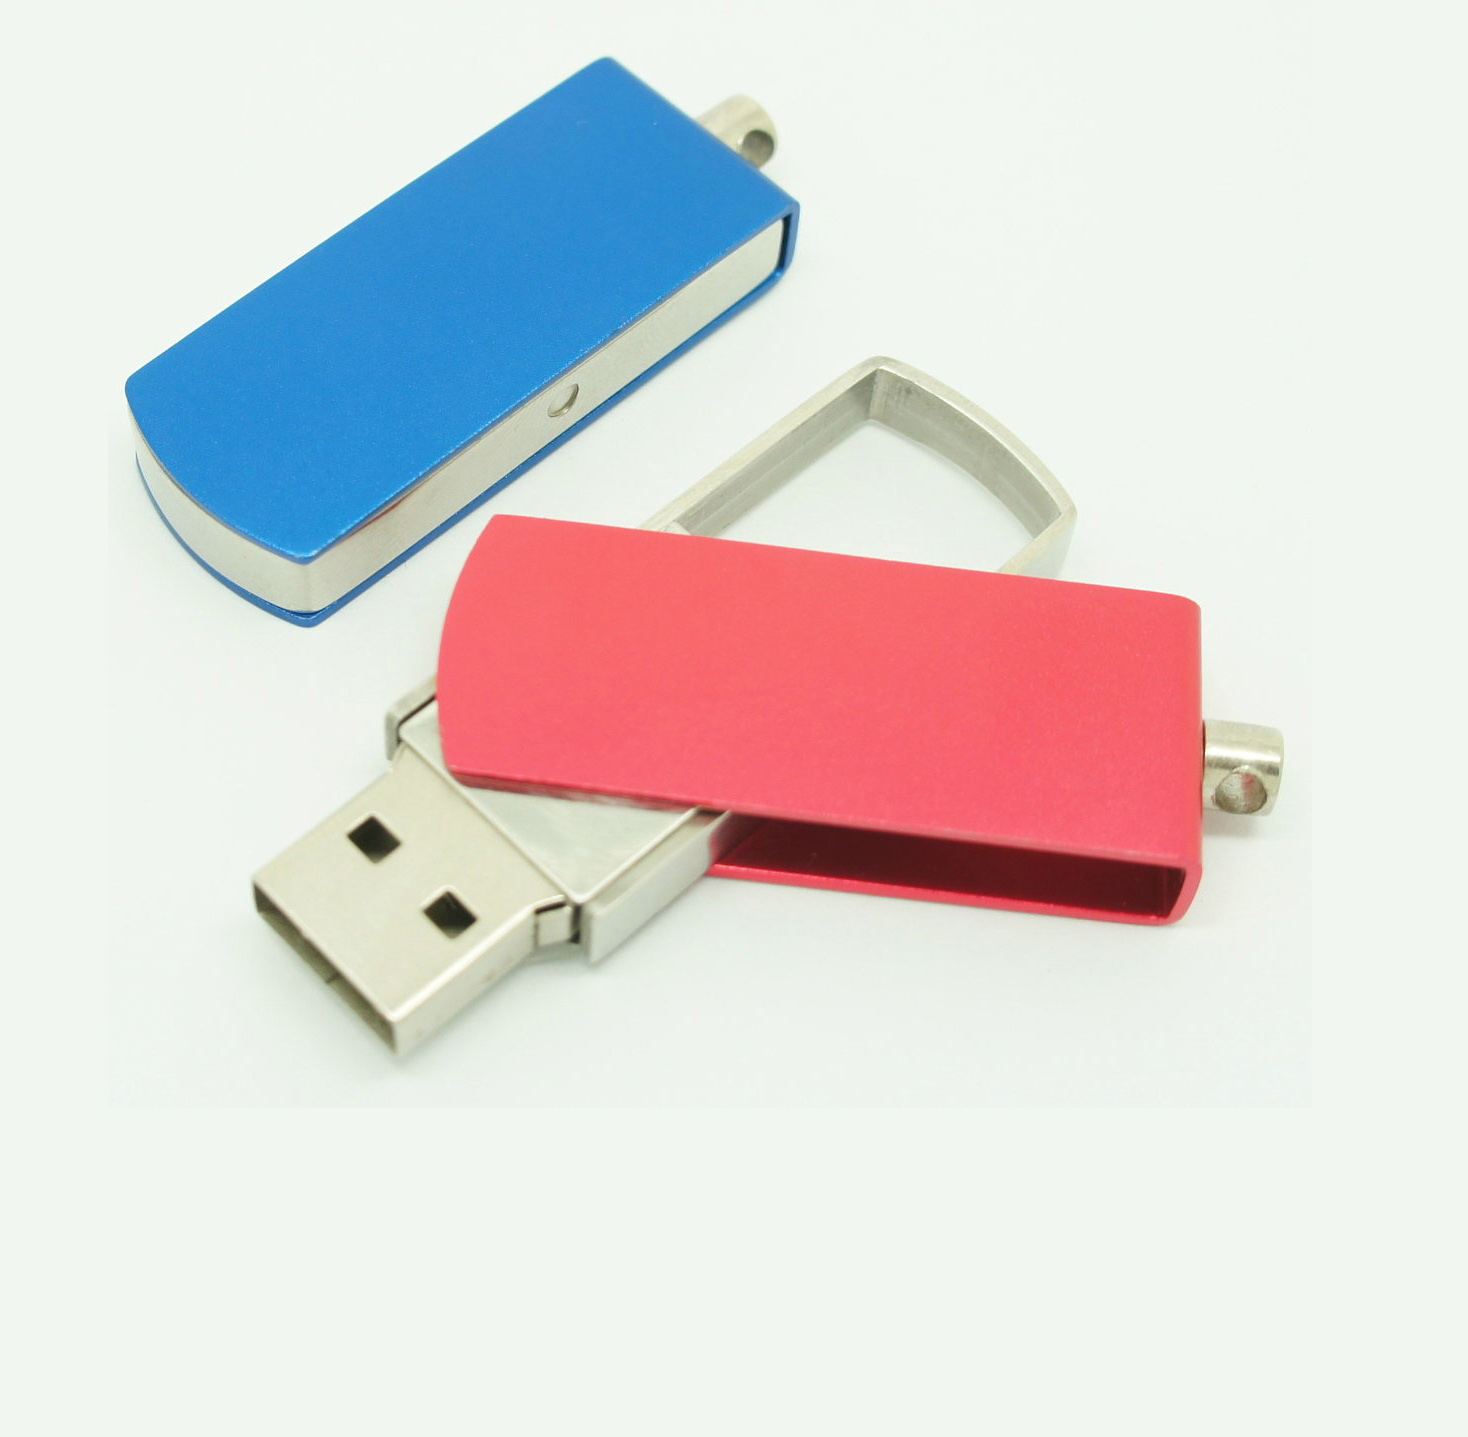 Metal USB stick